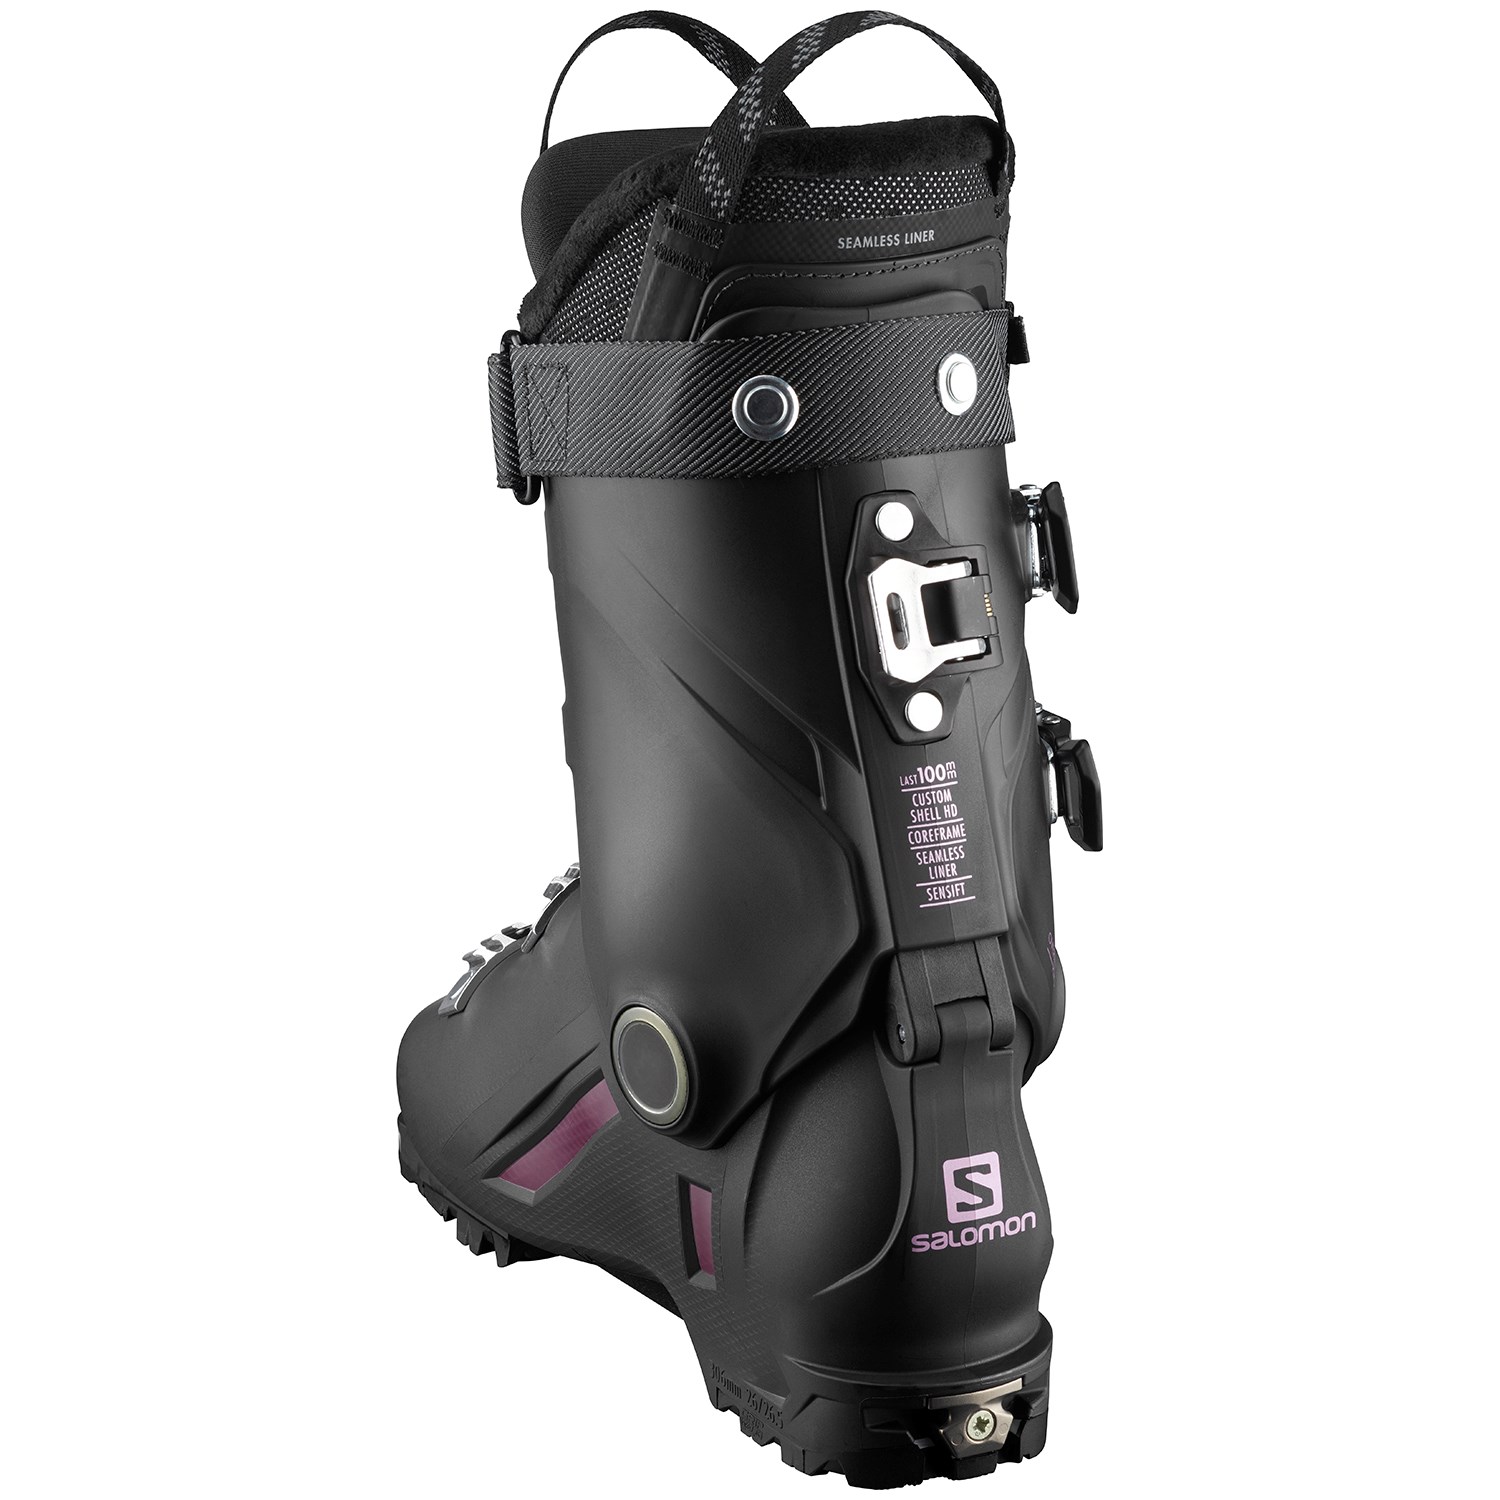 Salomon Shift Pro 90 W Alpine Touring Ski Boots - Women's 2022